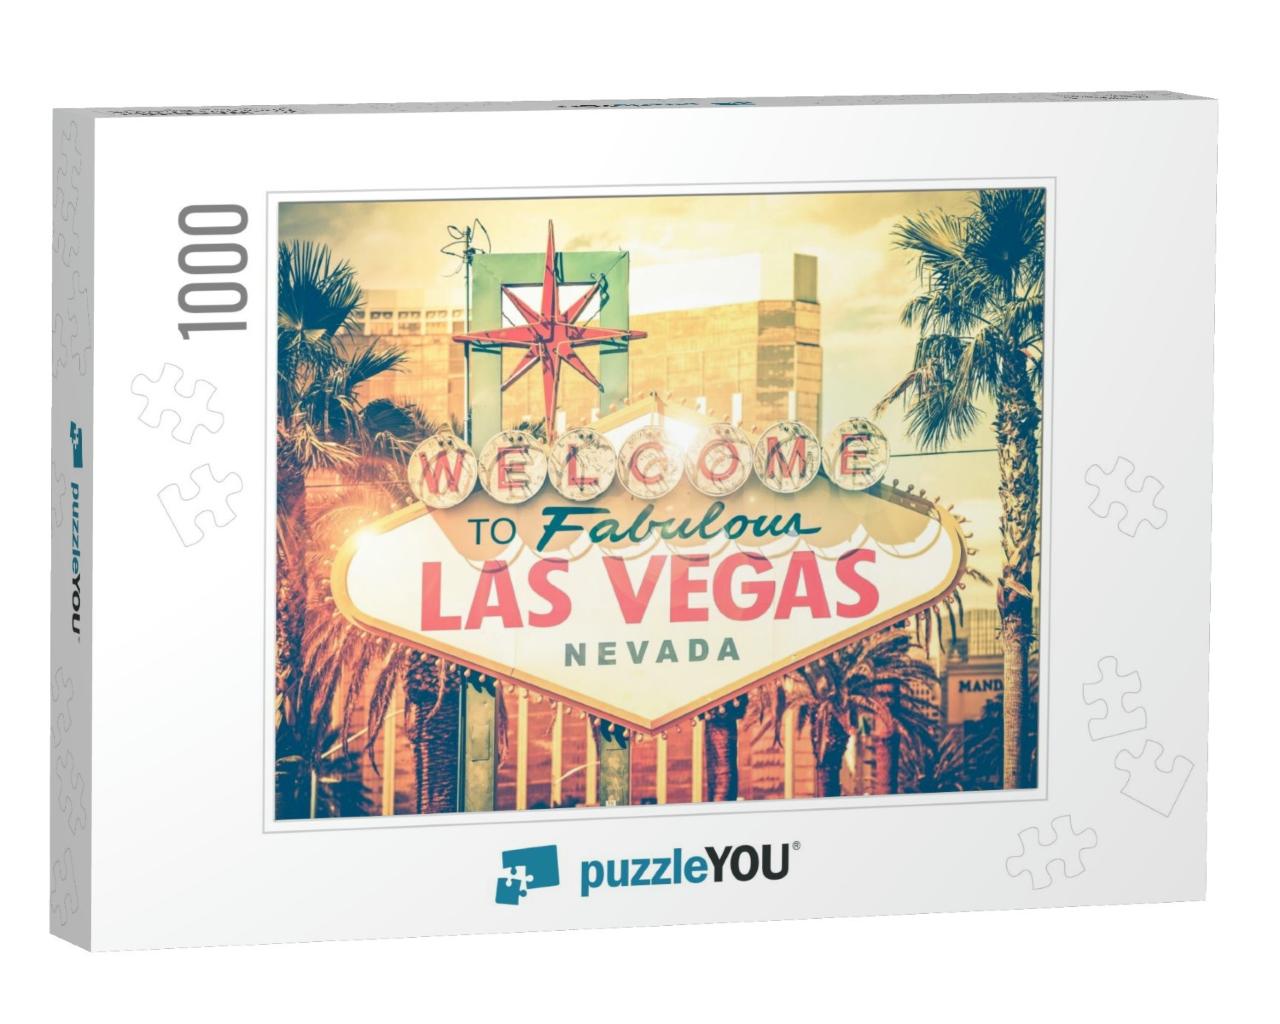 Vintage Las Vegas Photo. Las Vegas Boulevard Entrance Sig... Jigsaw Puzzle with 1000 pieces